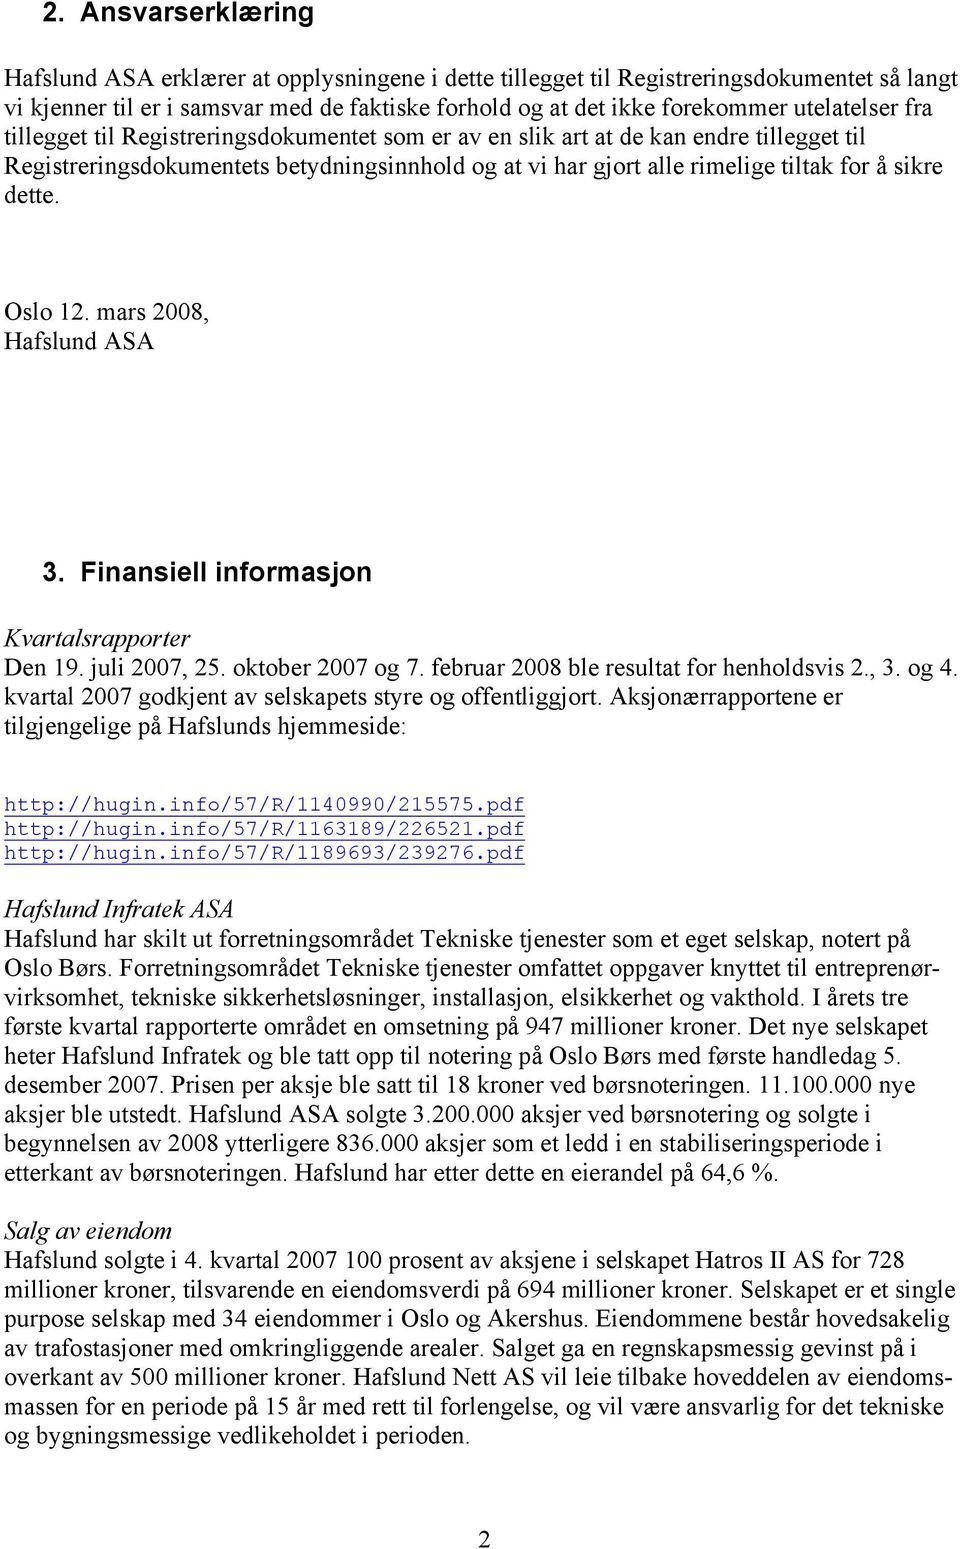 sikre dette. Oslo 12. mars 2008, Hafslund ASA 3. Finansiell informasjon Kvartalsrapporter Den 19. juli 2007, 25. oktober 2007 og 7. februar 2008 ble resultat for henholdsvis 2., 3. og 4.